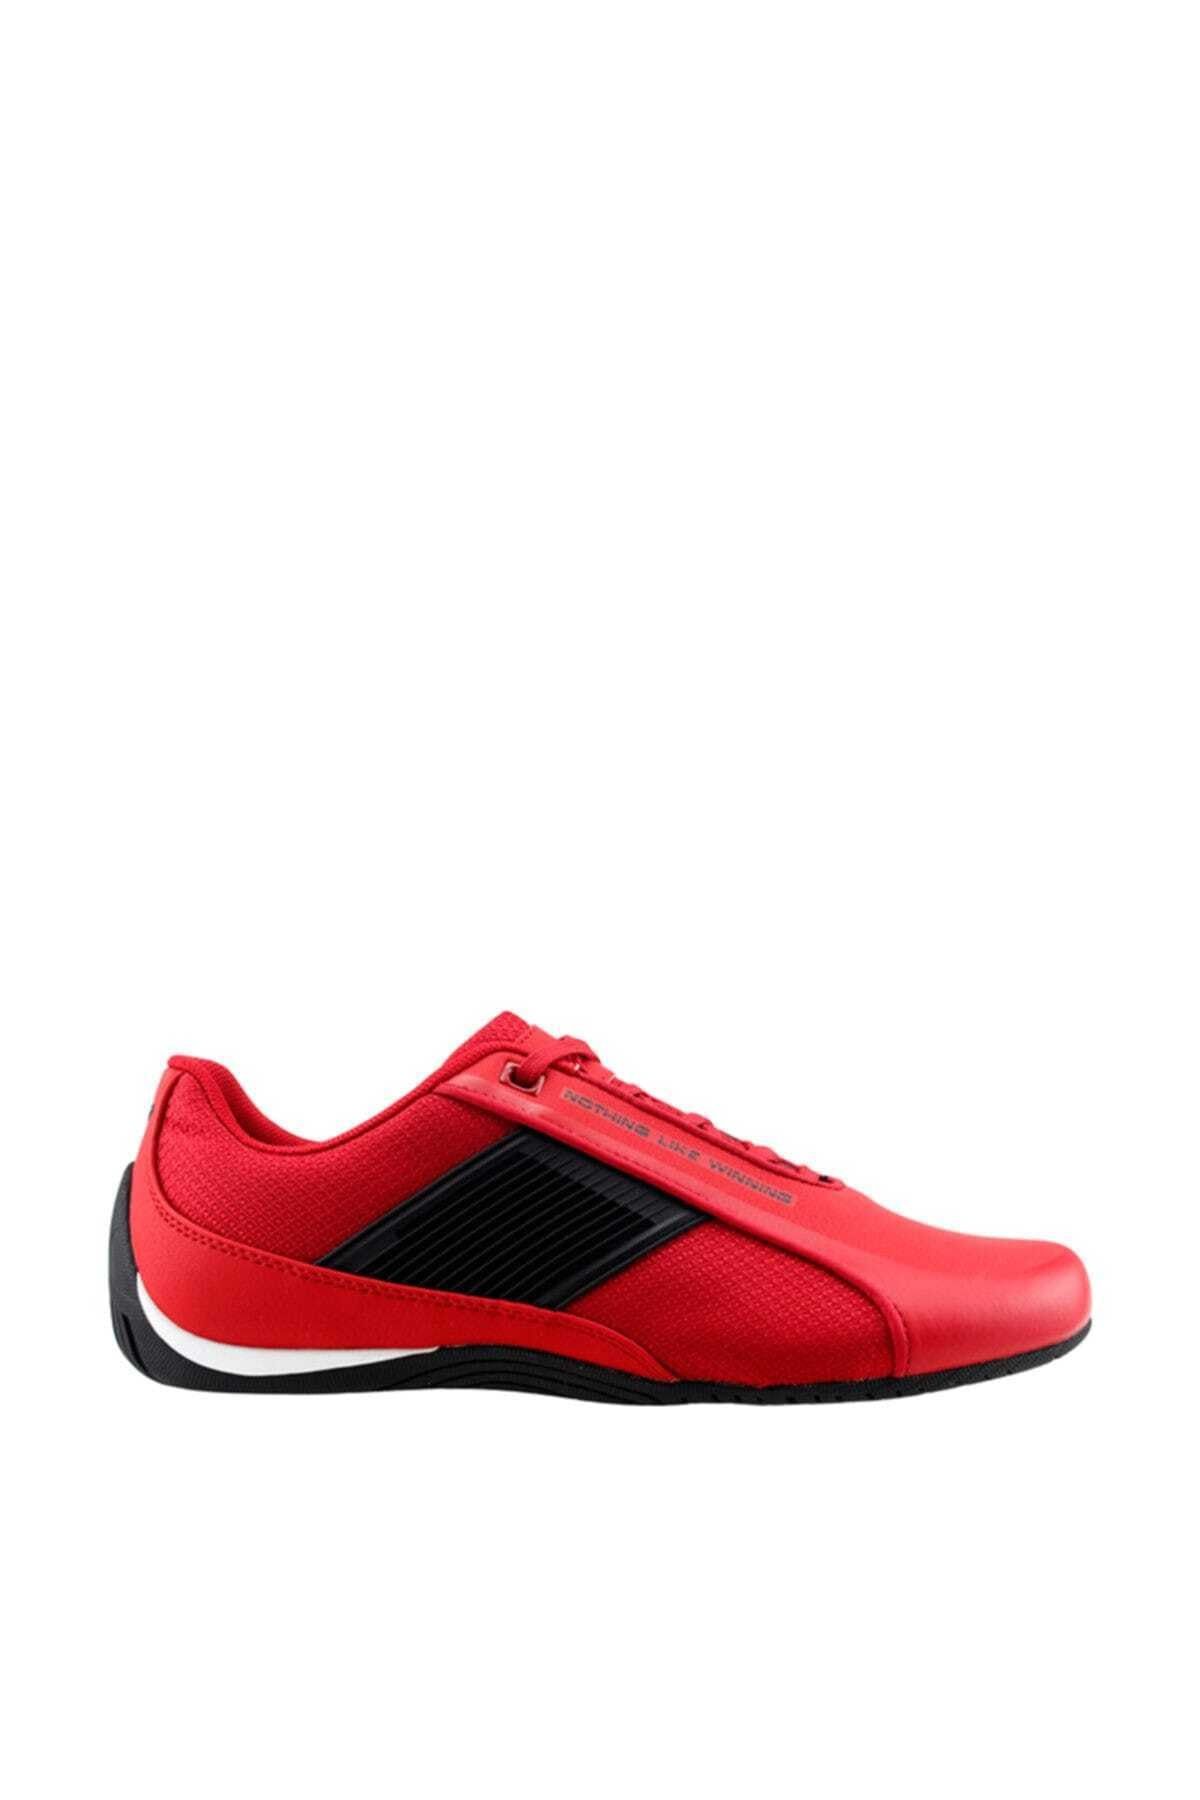 Lescon 6537 Sneakers Günlük Erkek Spor Ayakkabısı - - 6537 - Kırmızı - 45 - St01187-6135